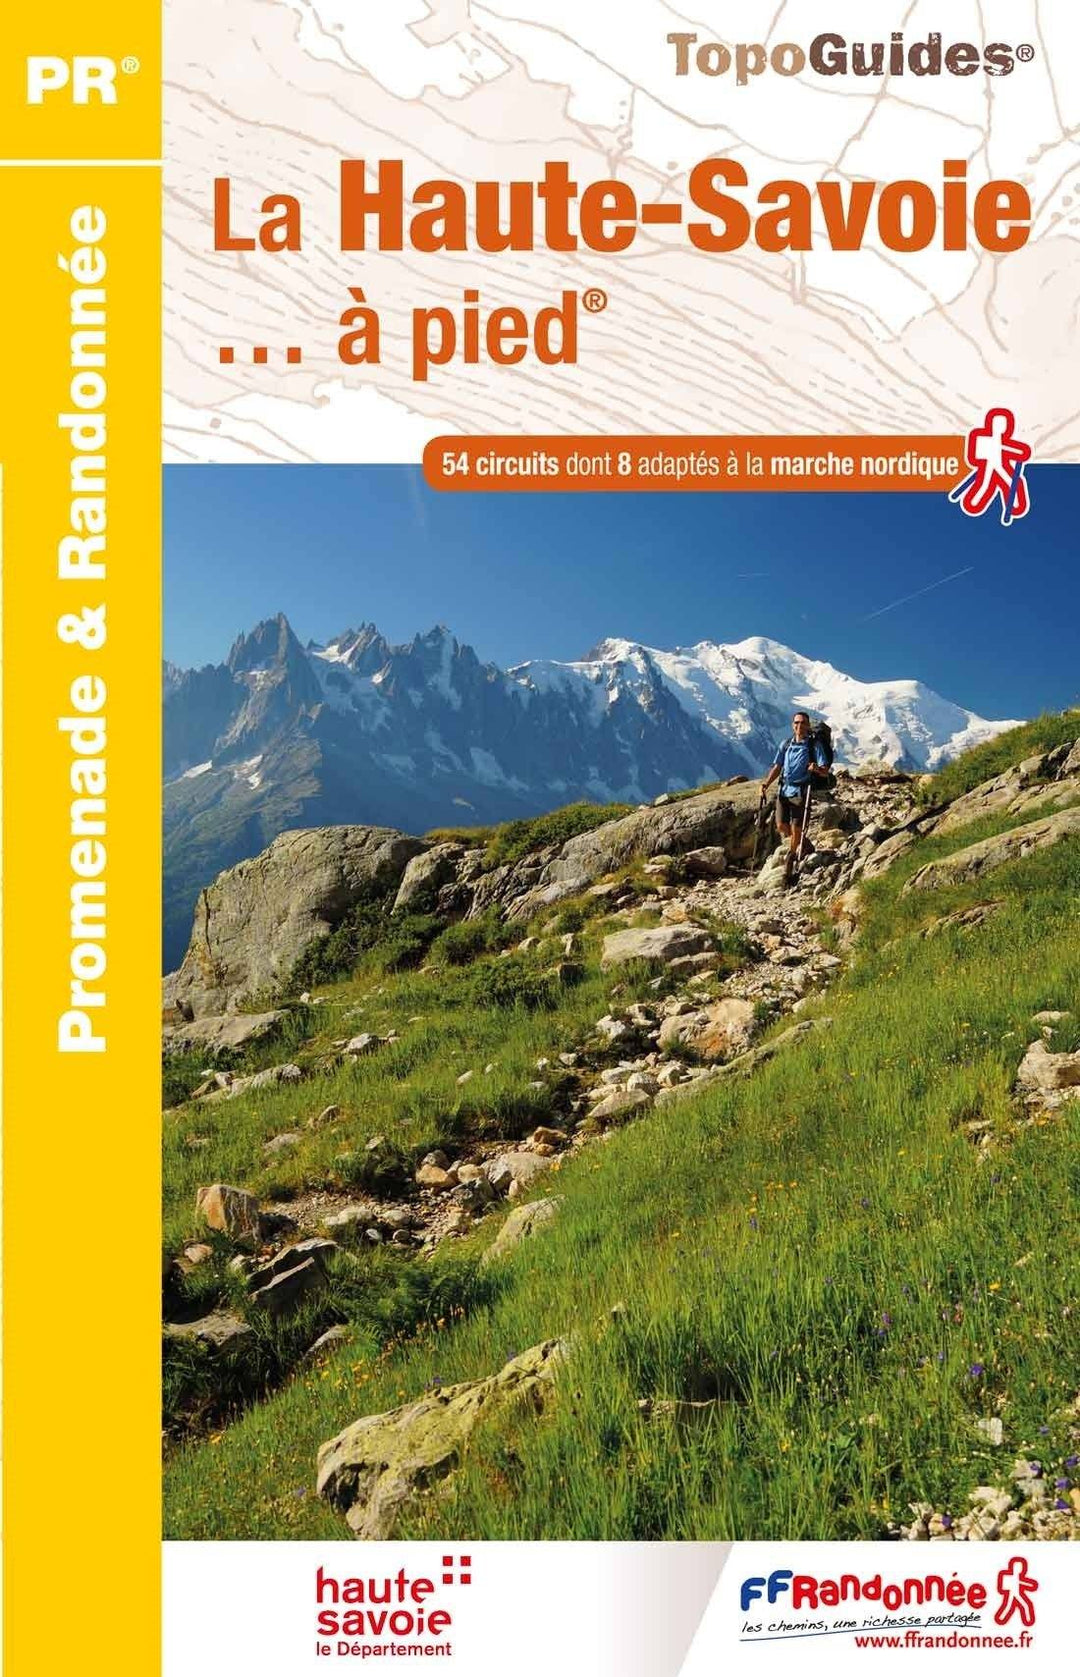 Topoguide de randonnée - La Haute-Savoie à pied | FFR guide de randonnée FFR - Fédération Française de Randonnée 